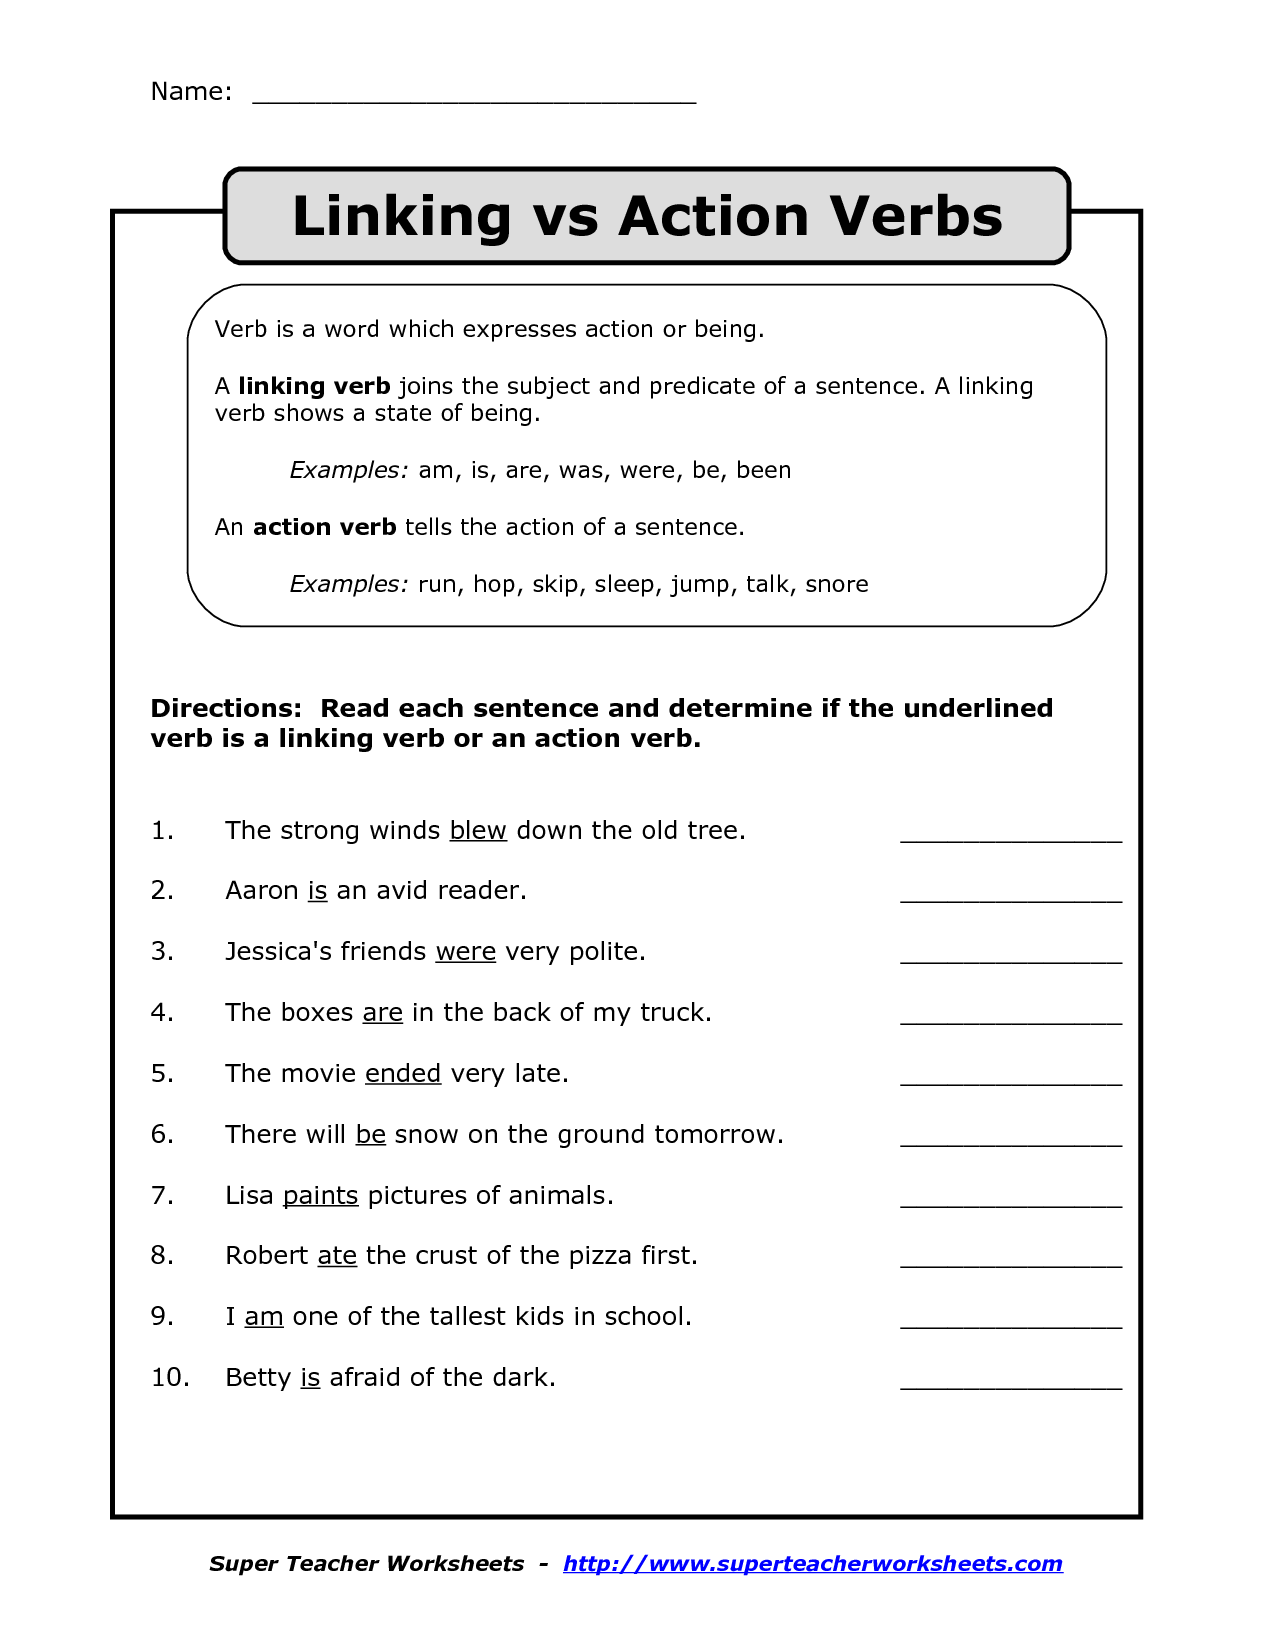 verb-be-worksheet-free-esl-printable-worksheets-made-by-teachers